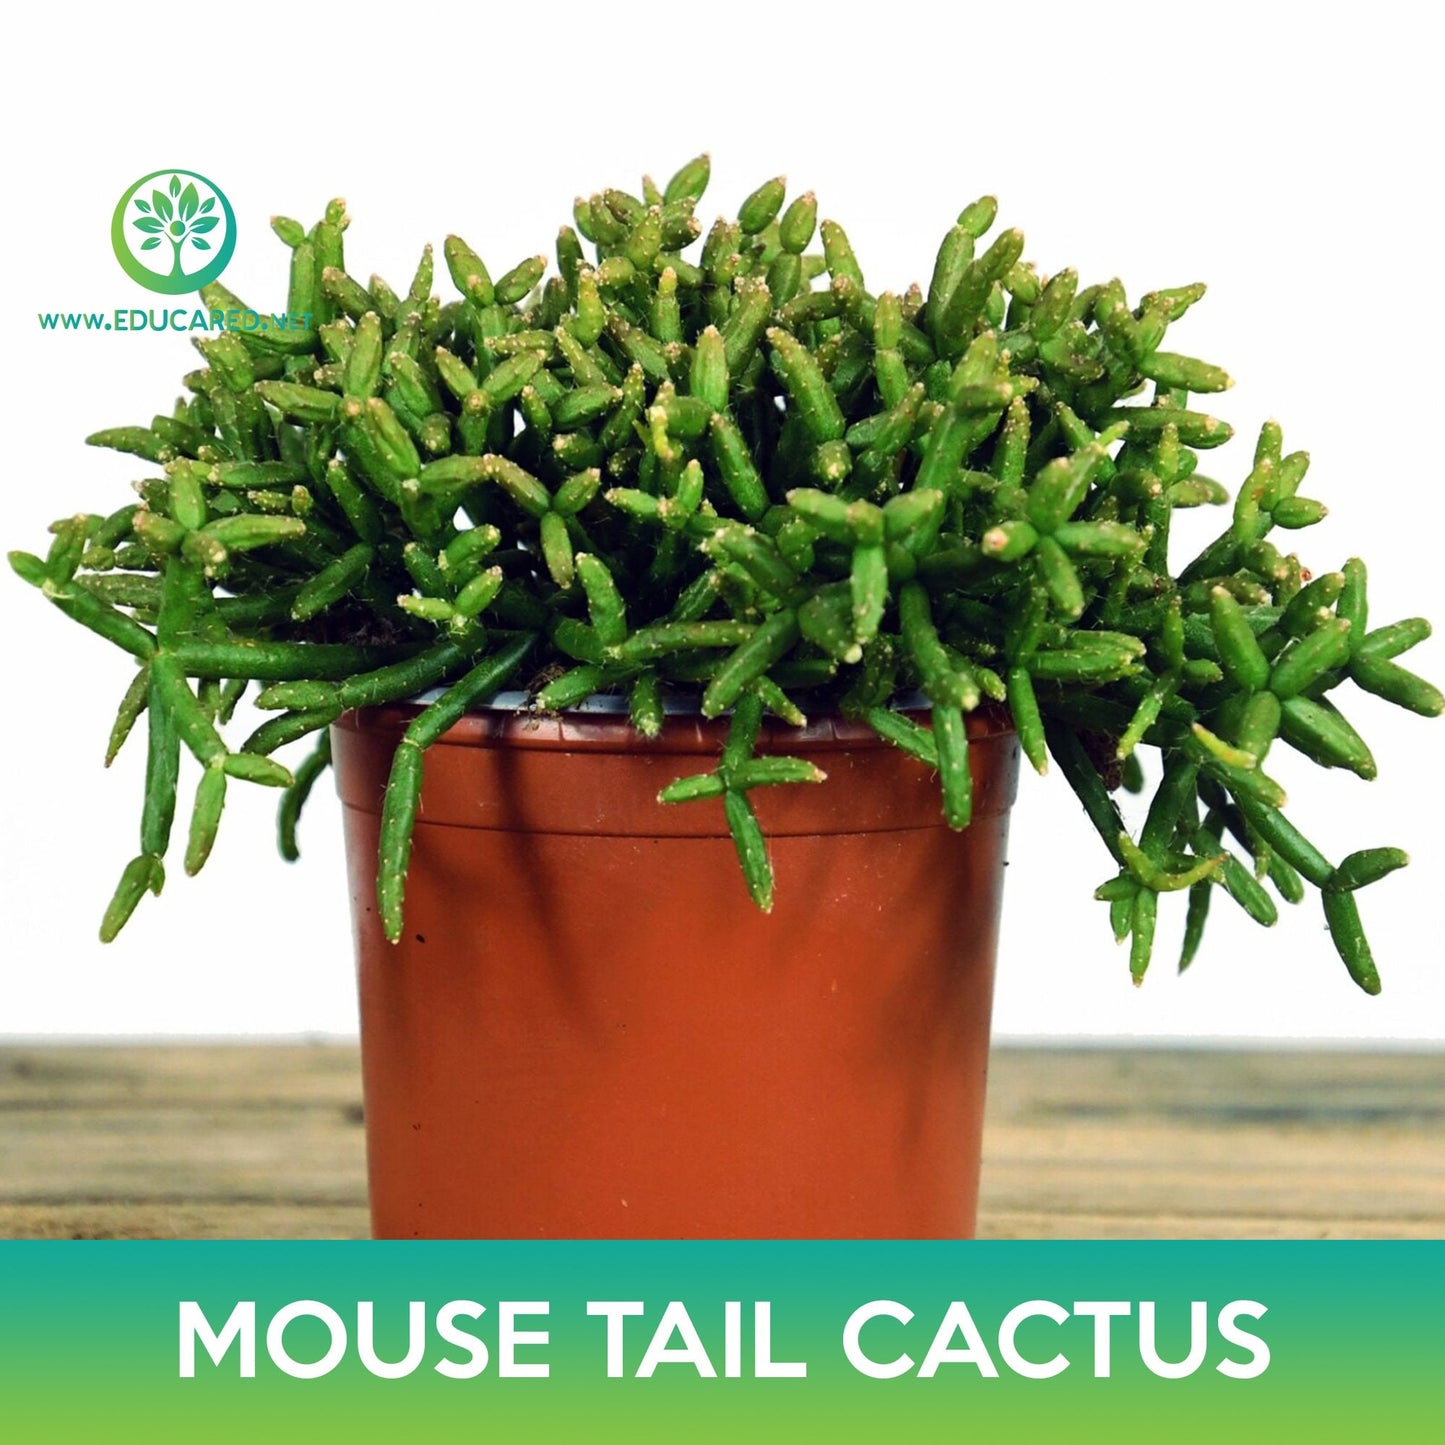 Mouse Tail Cactus Seeds, Rhipsalis horrida madagascar